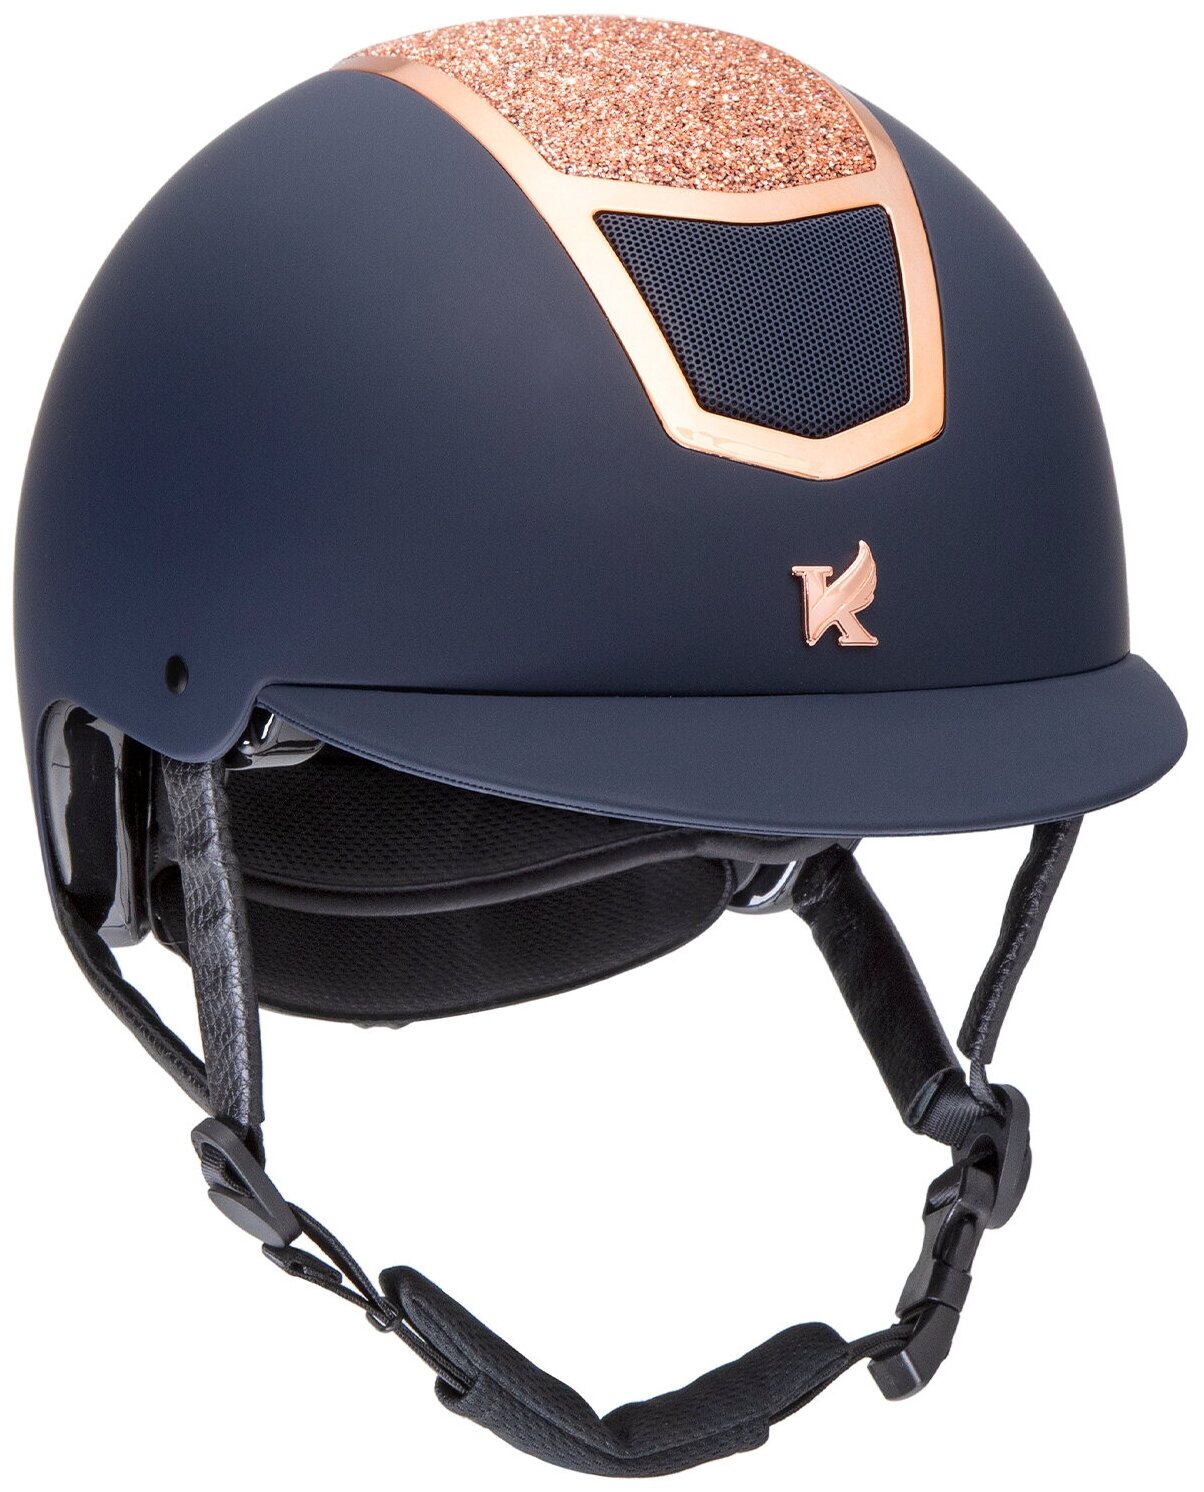 Шлем для верховой езды с регулировкой SHIRES Karben "Valentina", обхват головы 59-61 см, синий/розовое золото (Великобритания)